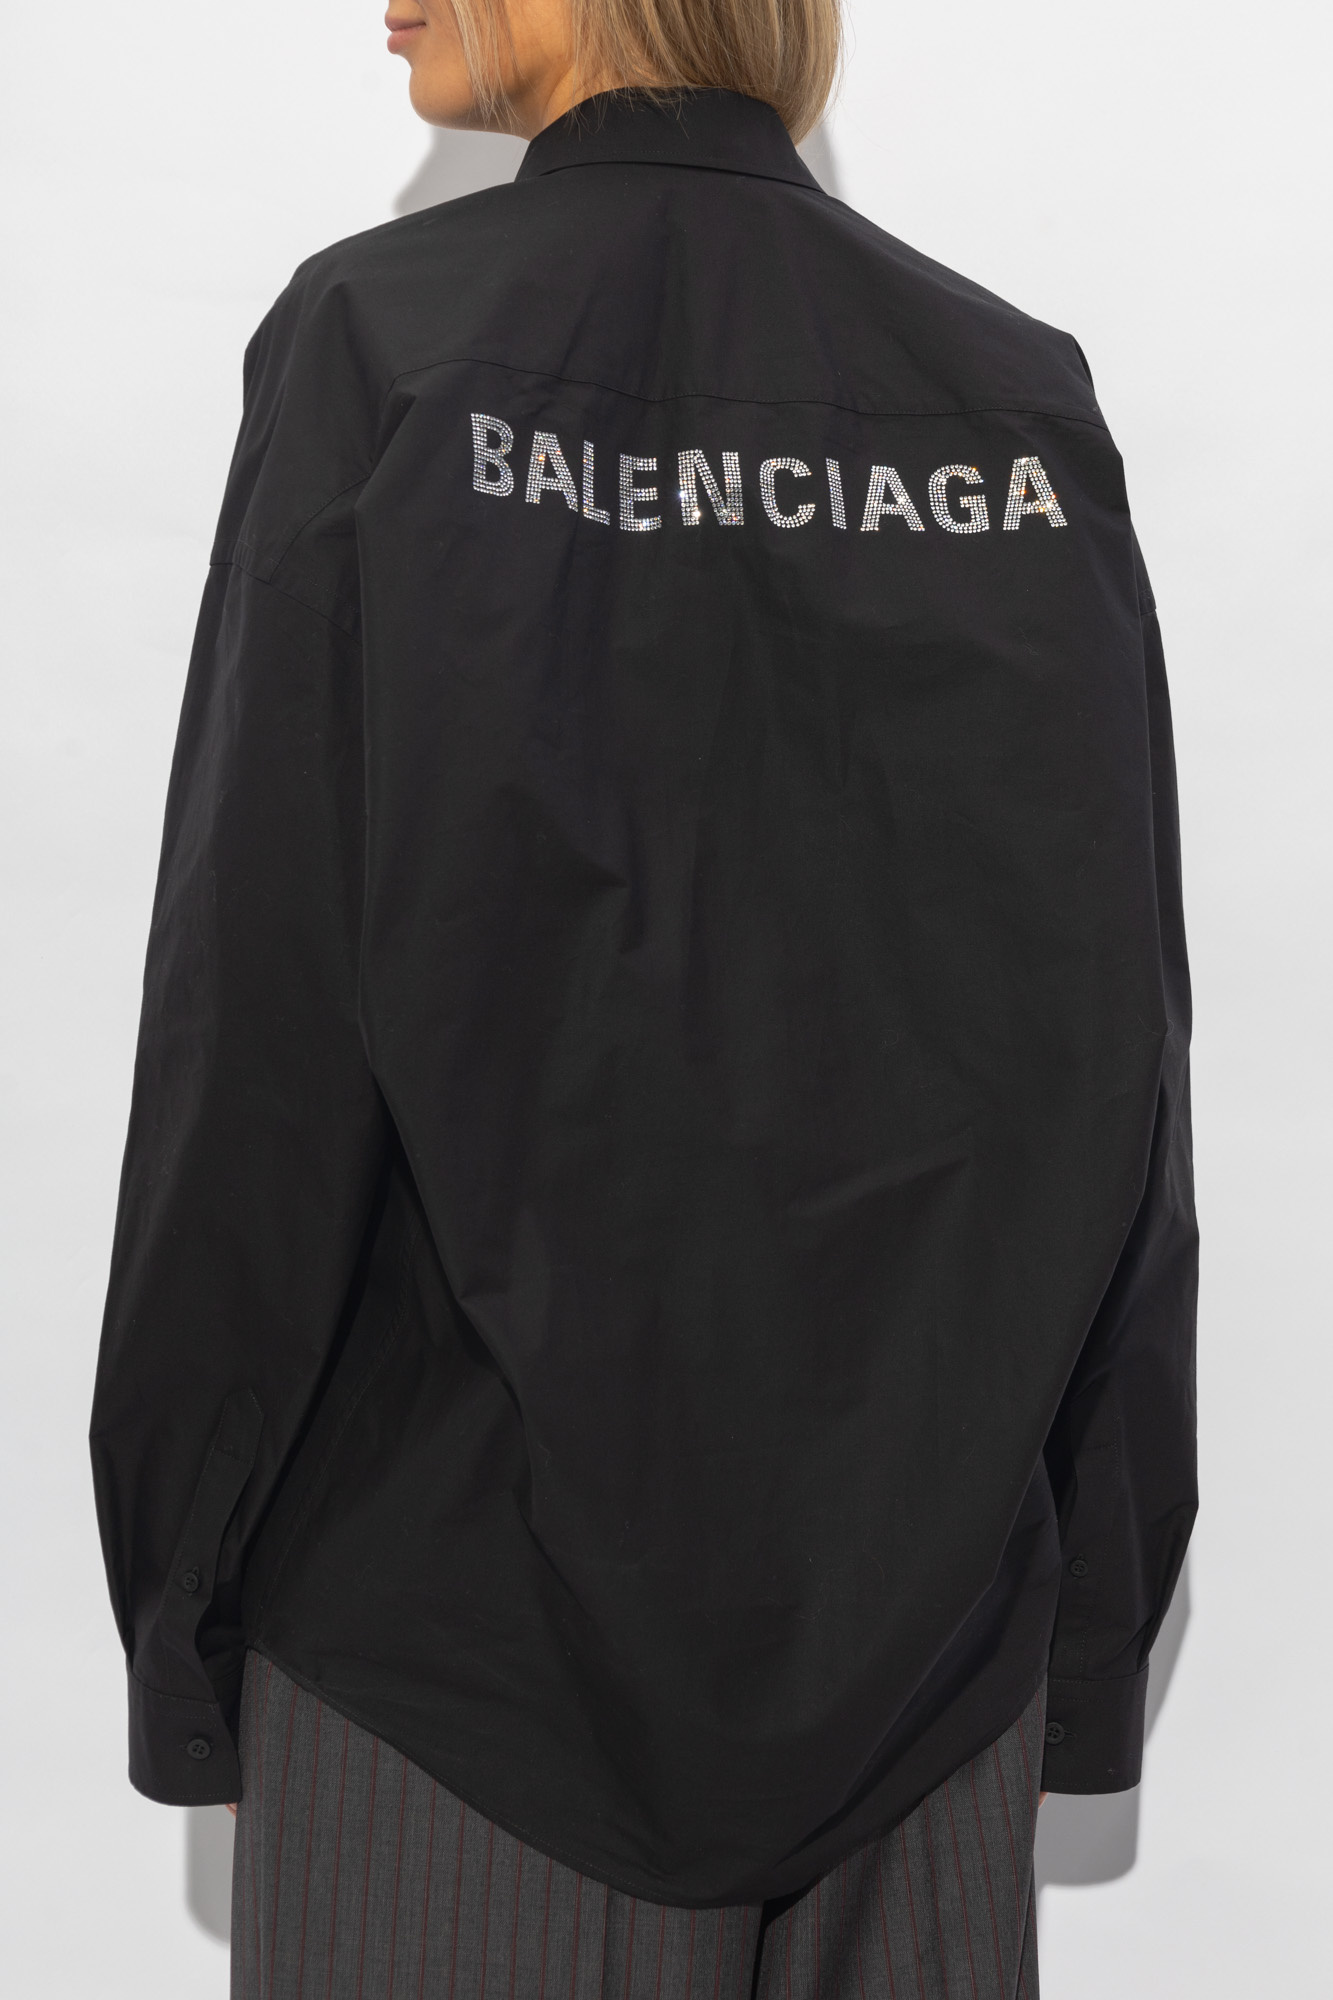 Balenciaga Women Clothing Outerwear